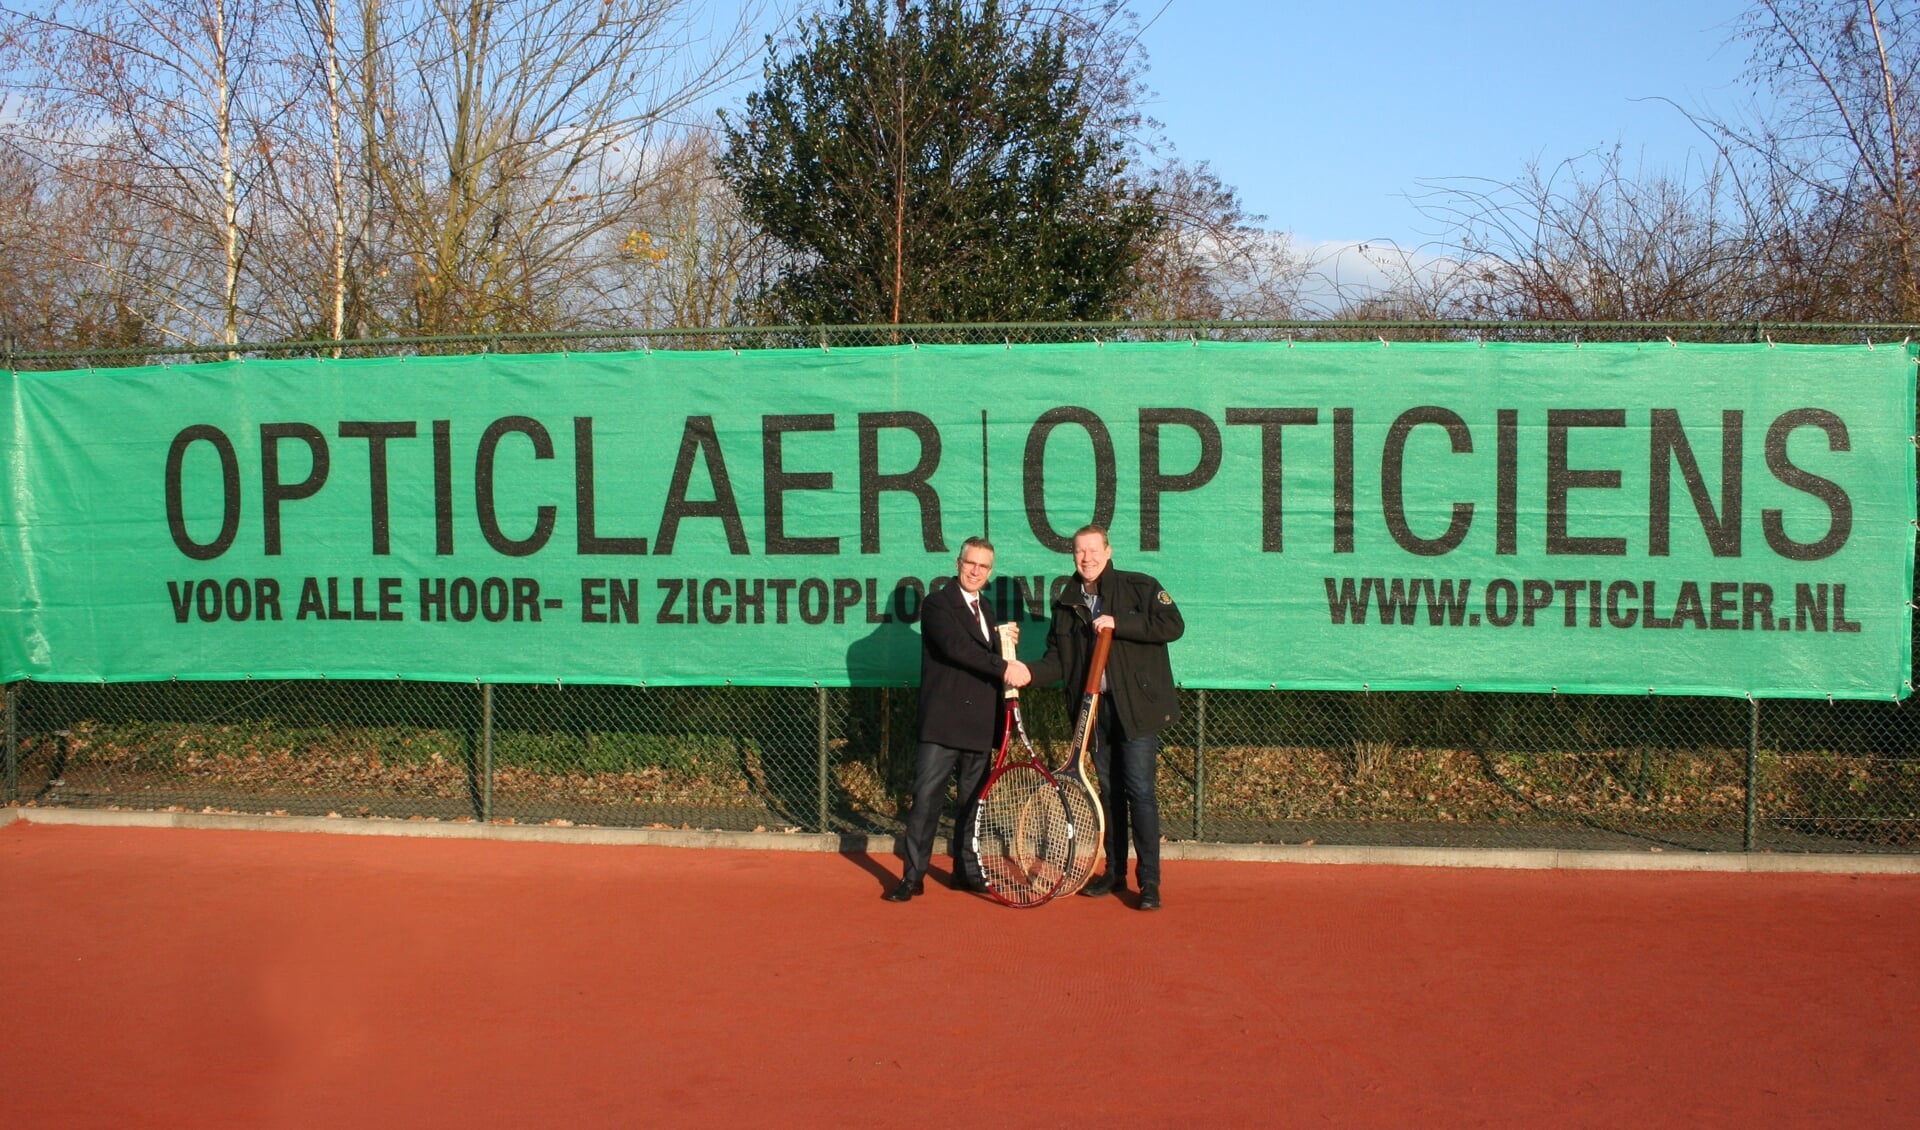 Wim Lafeber, eigenaar Opticlaer opticiens en Dimitry Wijnen, voorzitter LTV Randenbroek